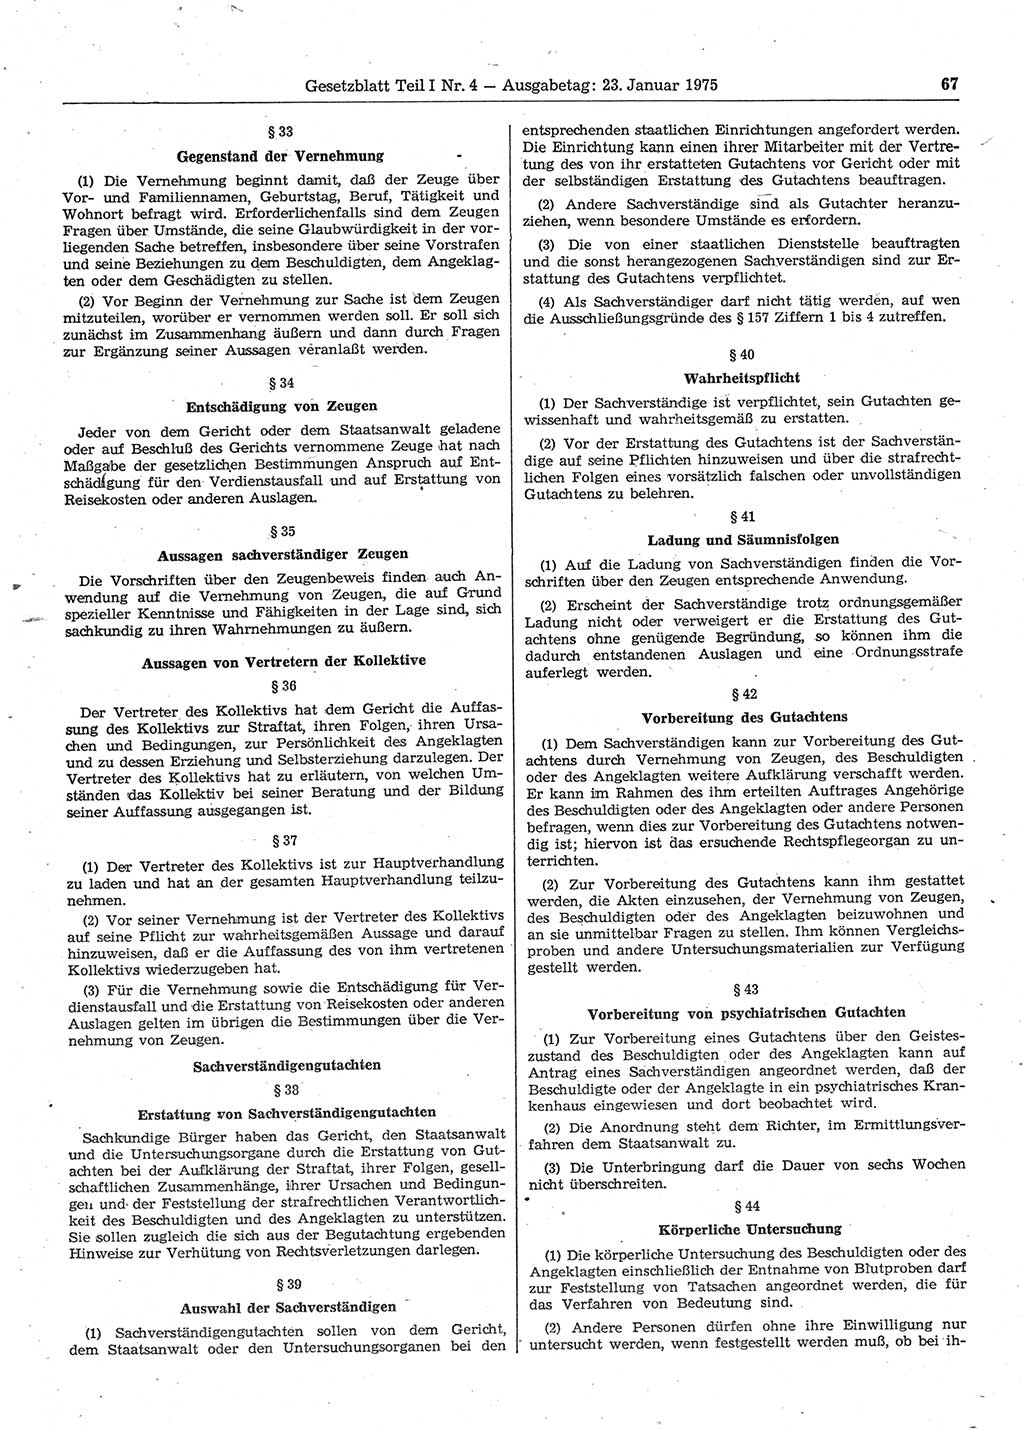 Gesetzblatt (GBl.) der Deutschen Demokratischen Republik (DDR) Teil Ⅰ 1975, Seite 67 (GBl. DDR Ⅰ 1975, S. 67)